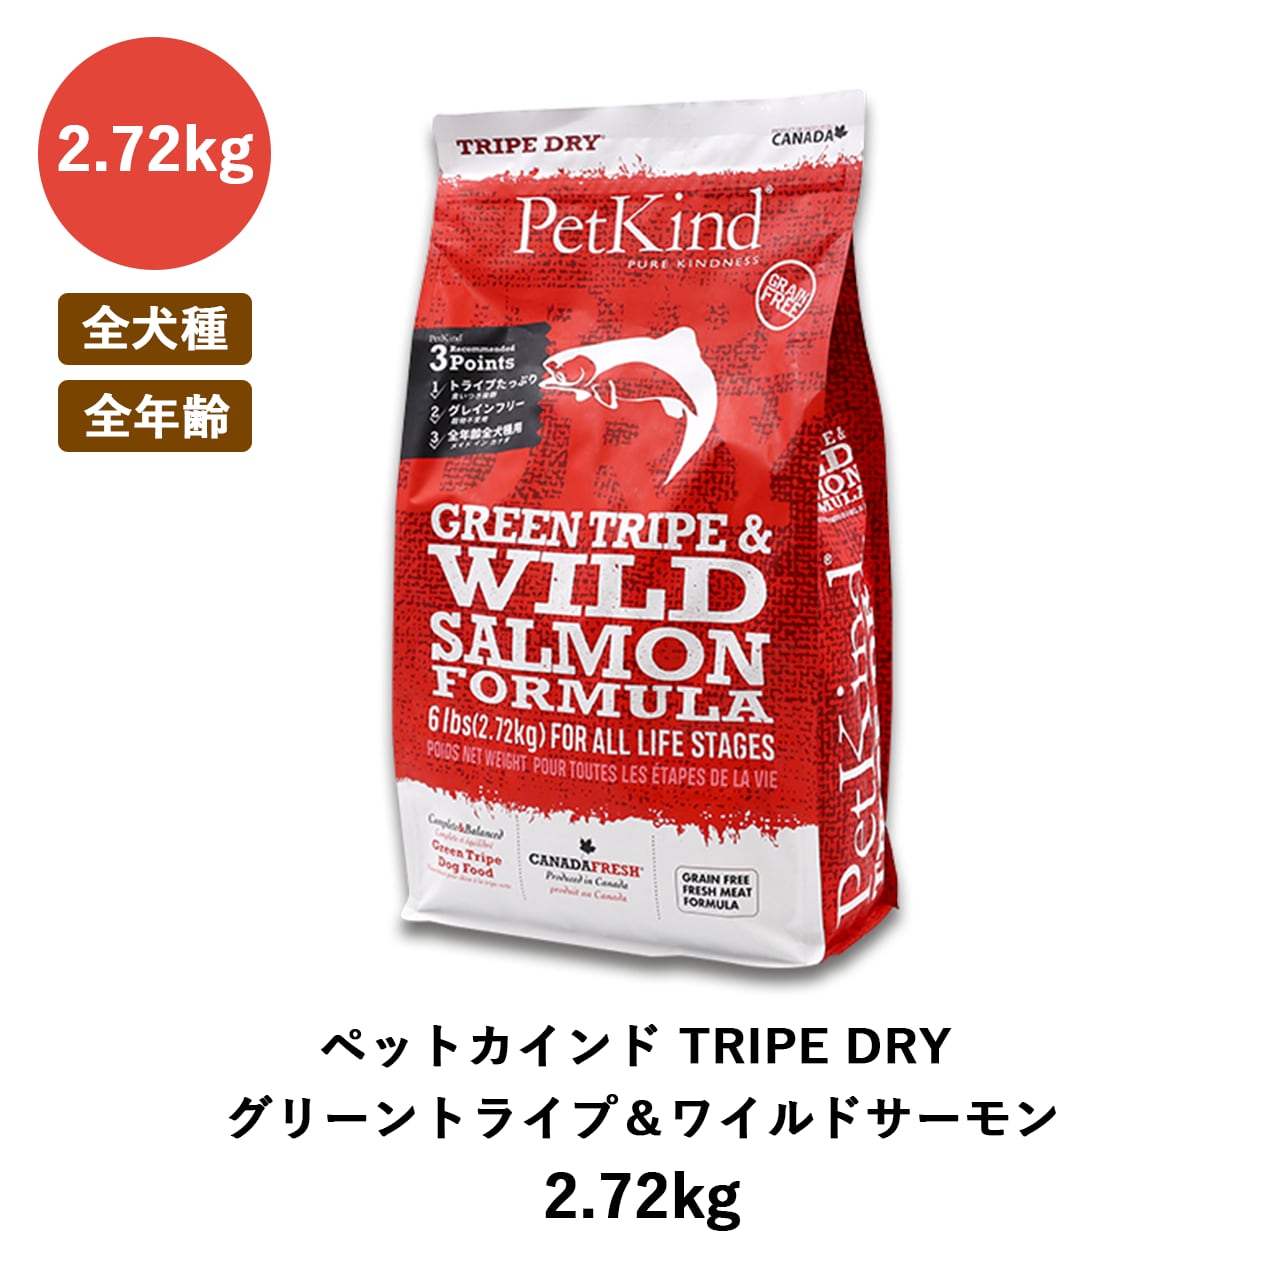 ドッグフード ペットカインド グリーントライプ ワイルドサーモン 2.72kg